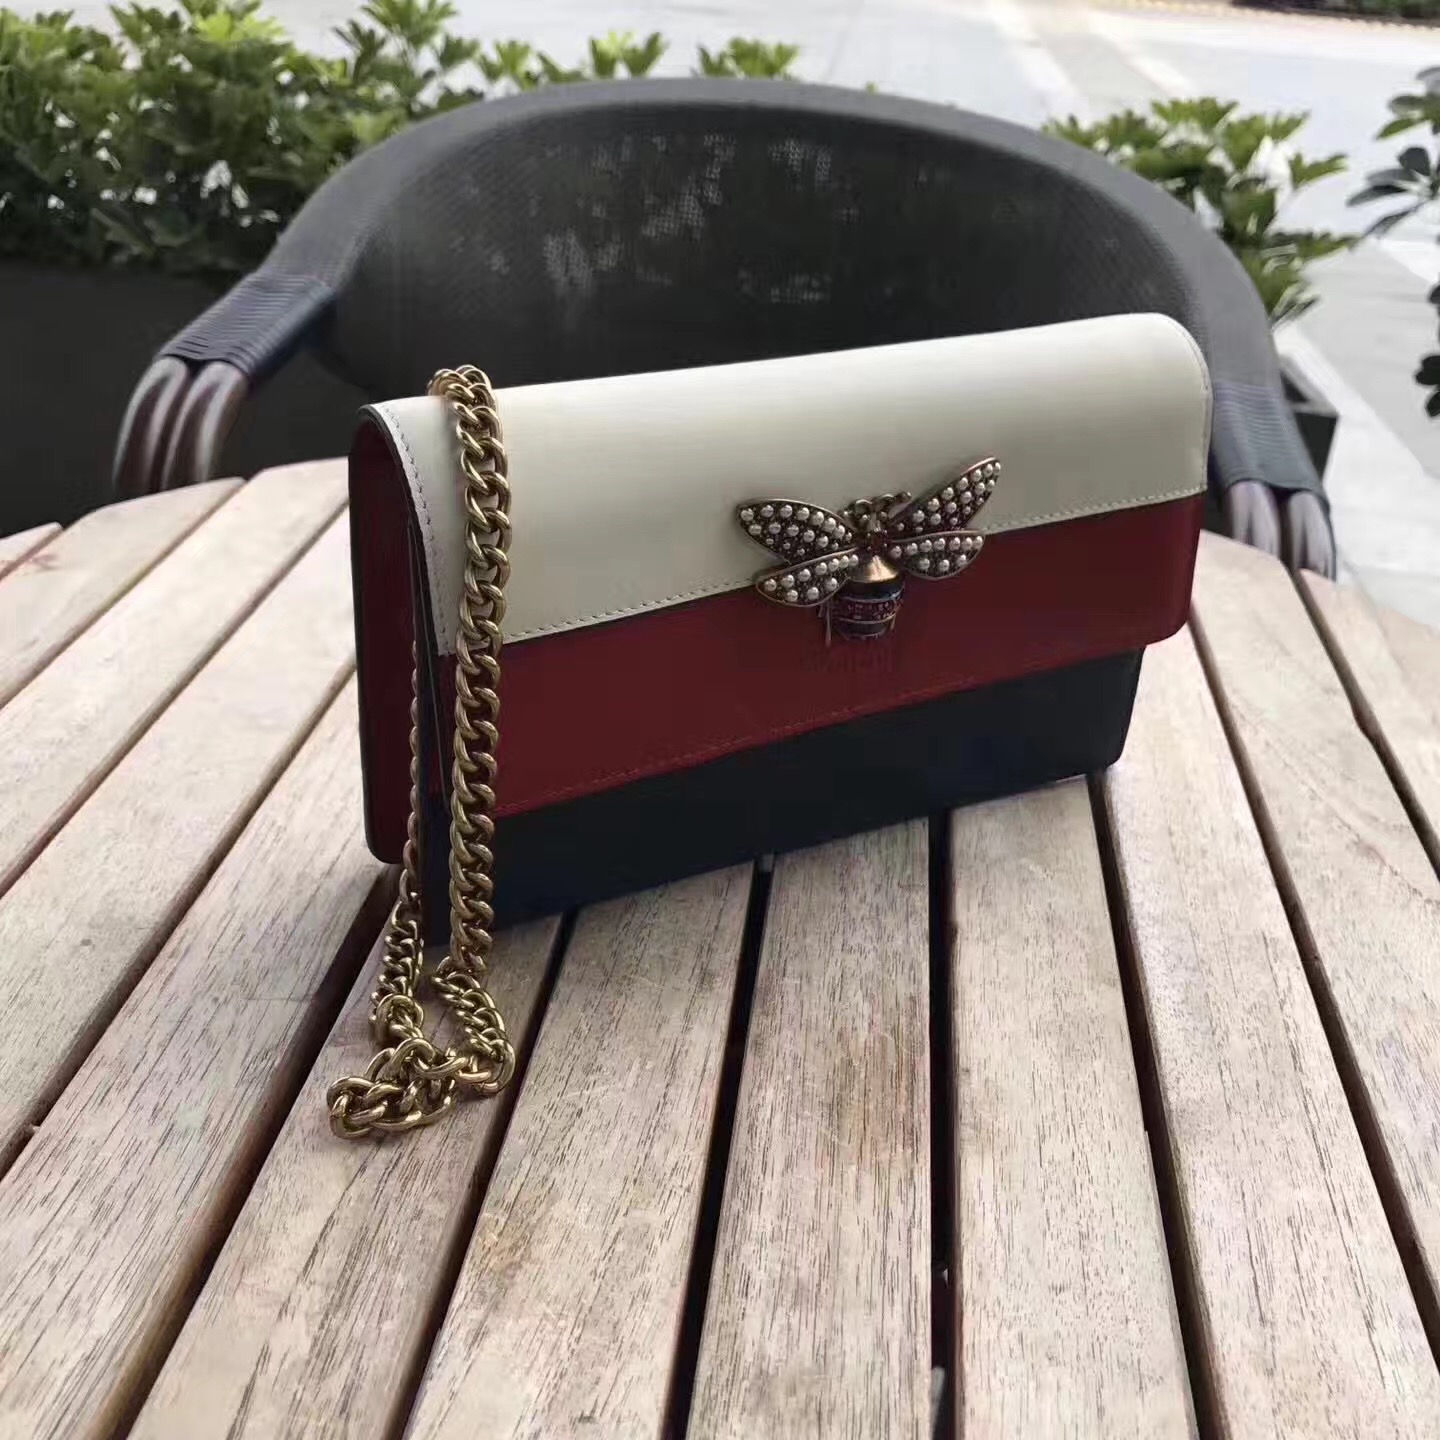 queen margaret leather mini bag